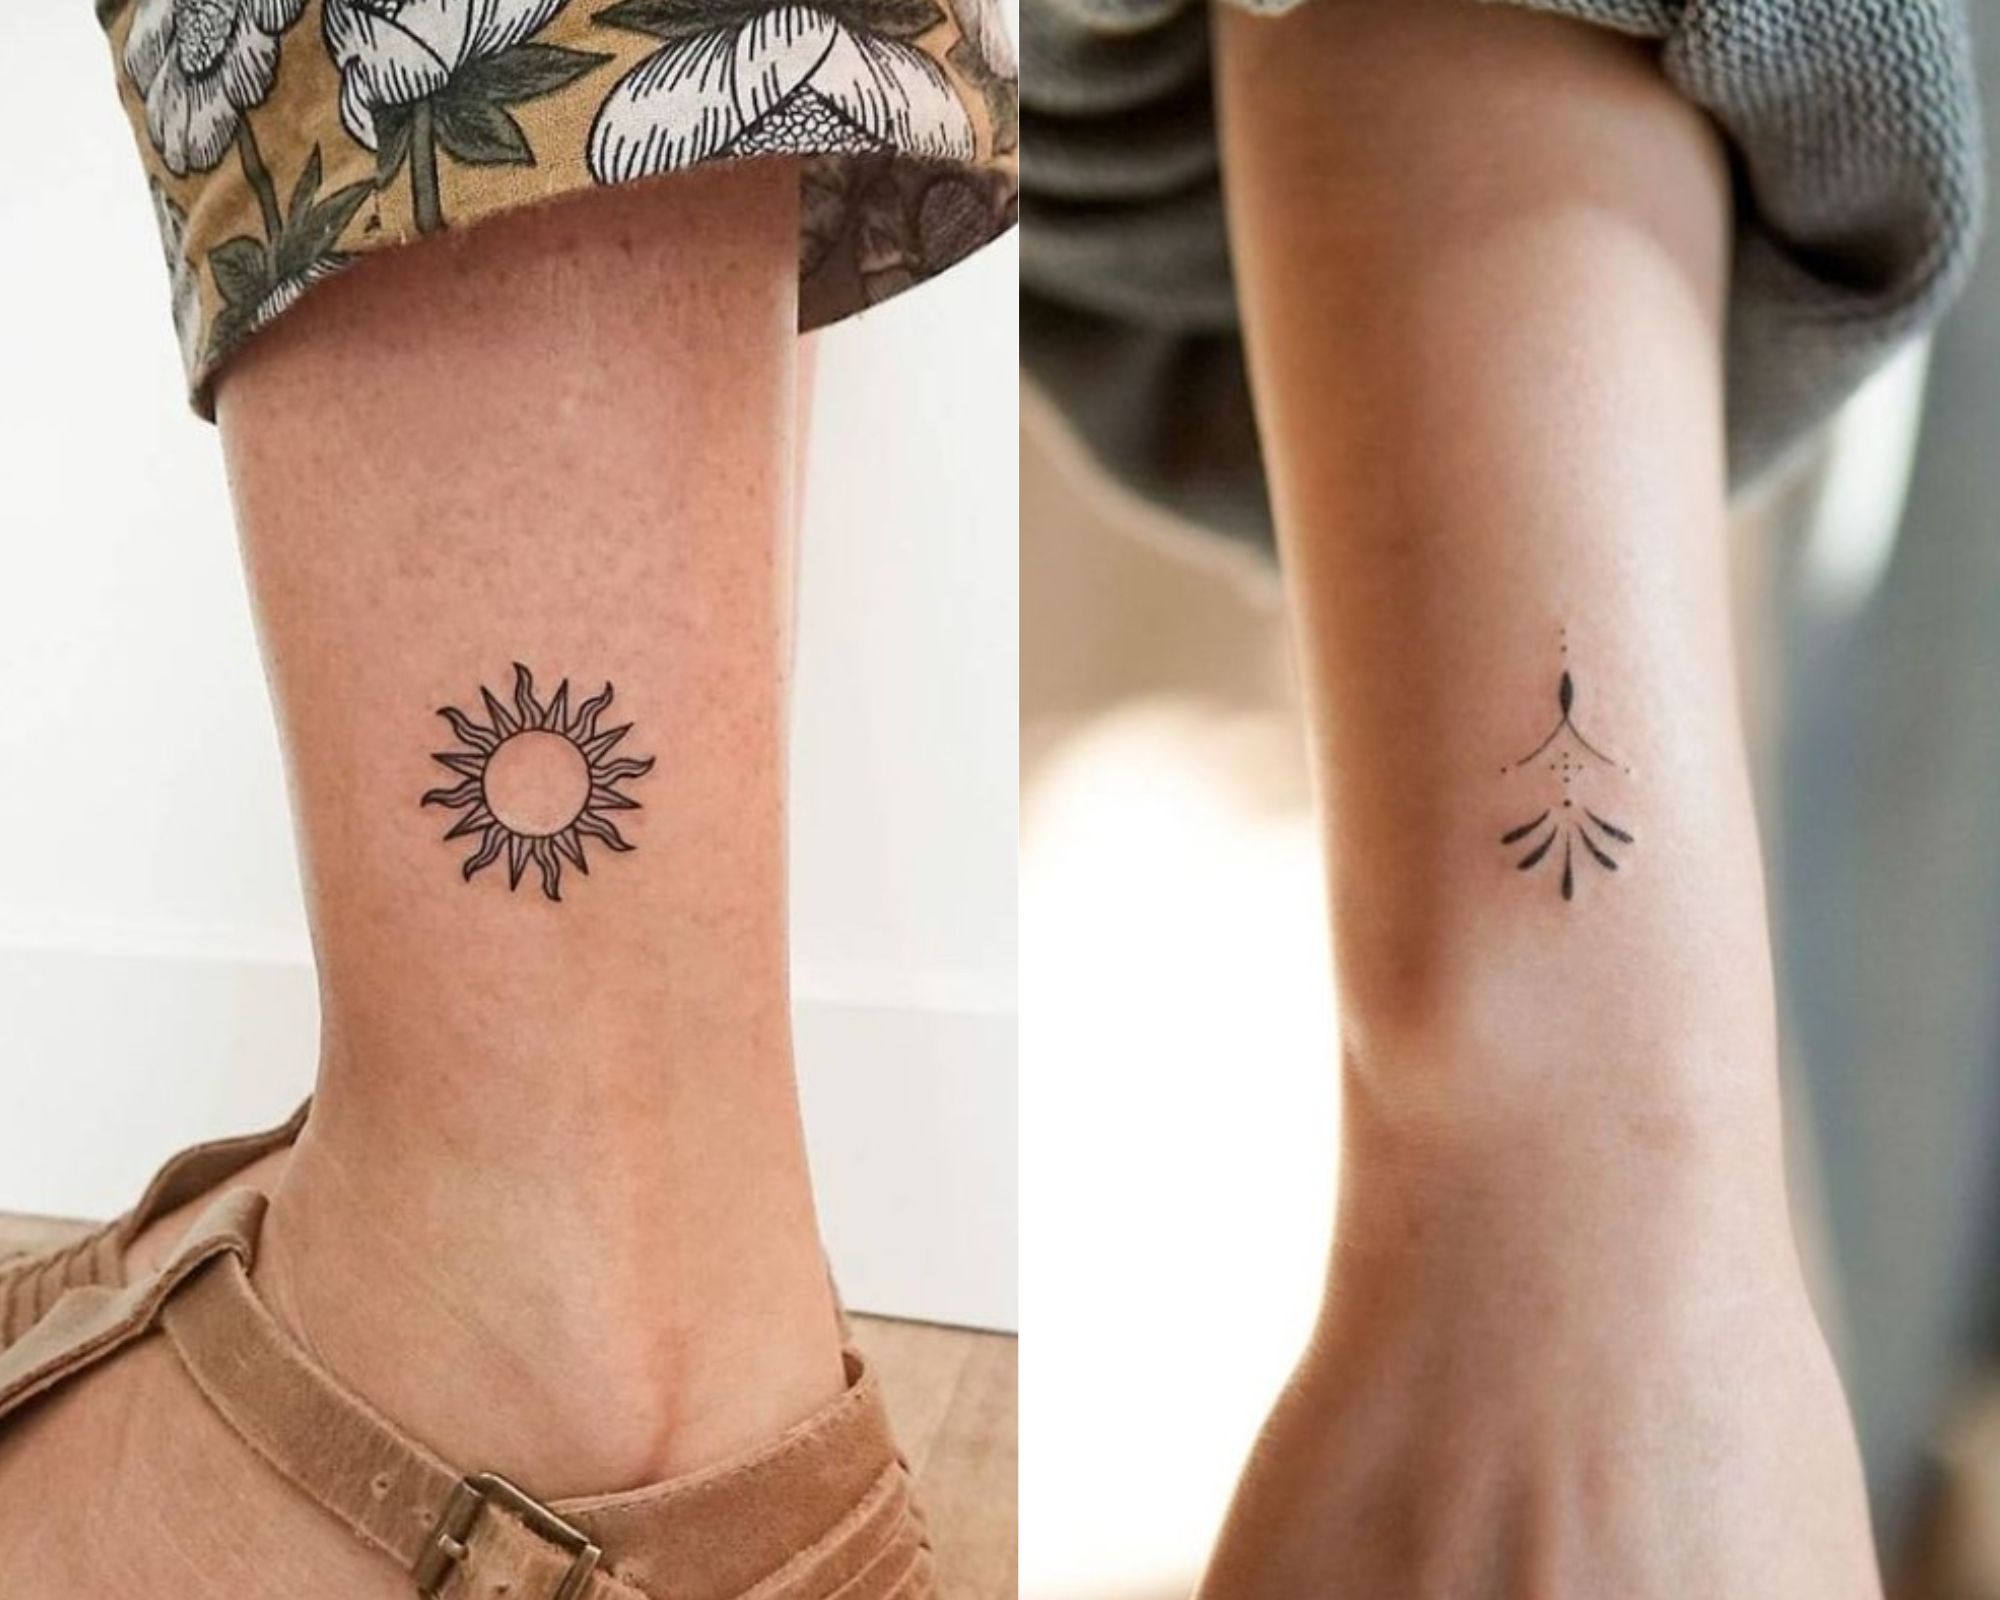 Ιδέες-για-μικρά-και-διακριτικά-tattoos